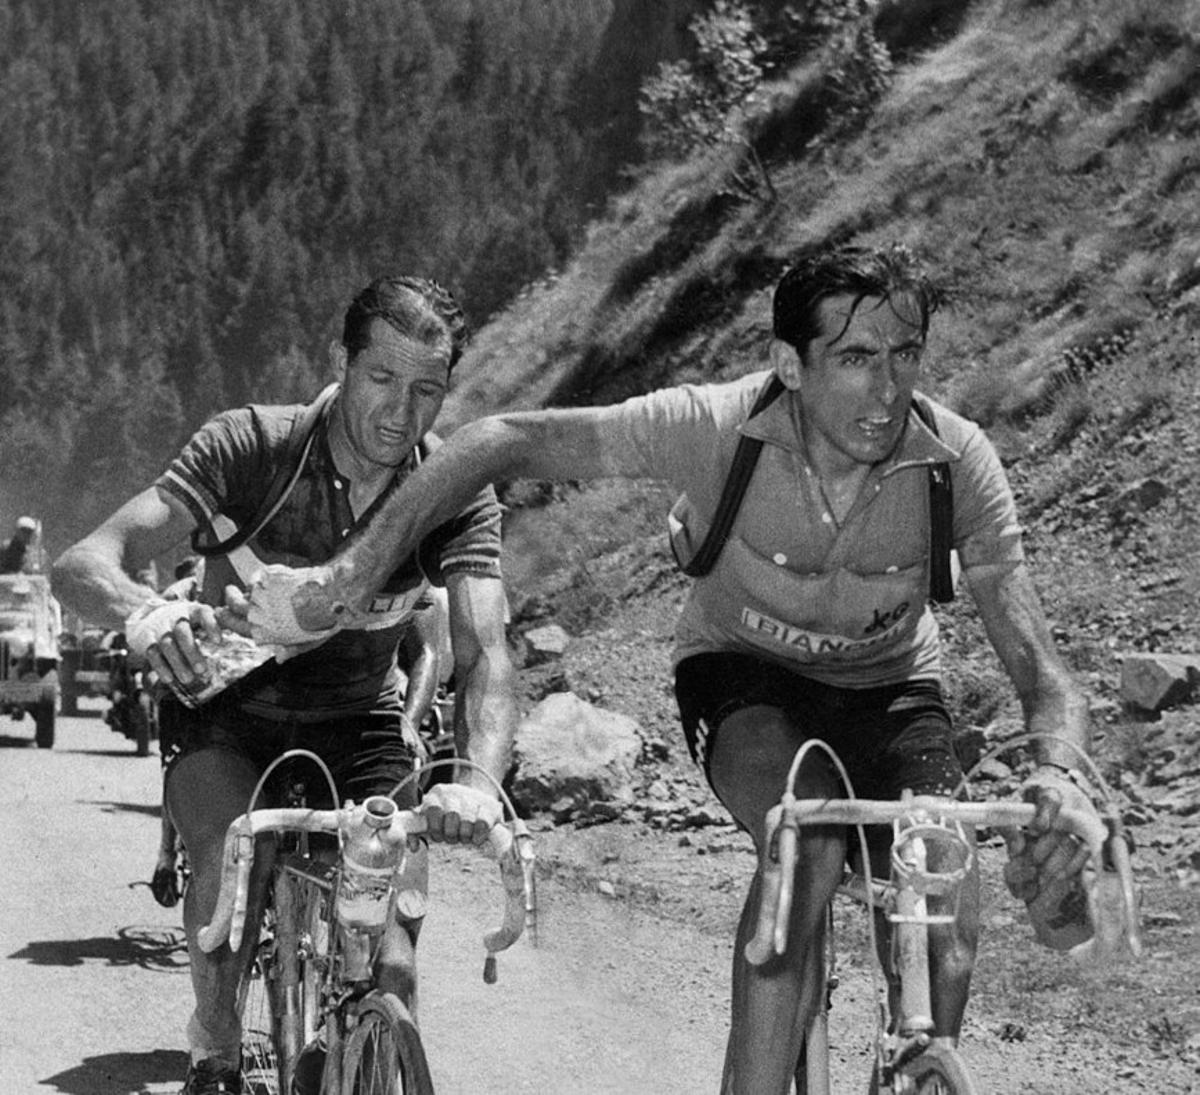 Gino Bartali, a la izquierda, en una histórica imagen junto a Fausto Coppi. ¿Quién dio el botellín a quién? El enigma sigue y seguirá.